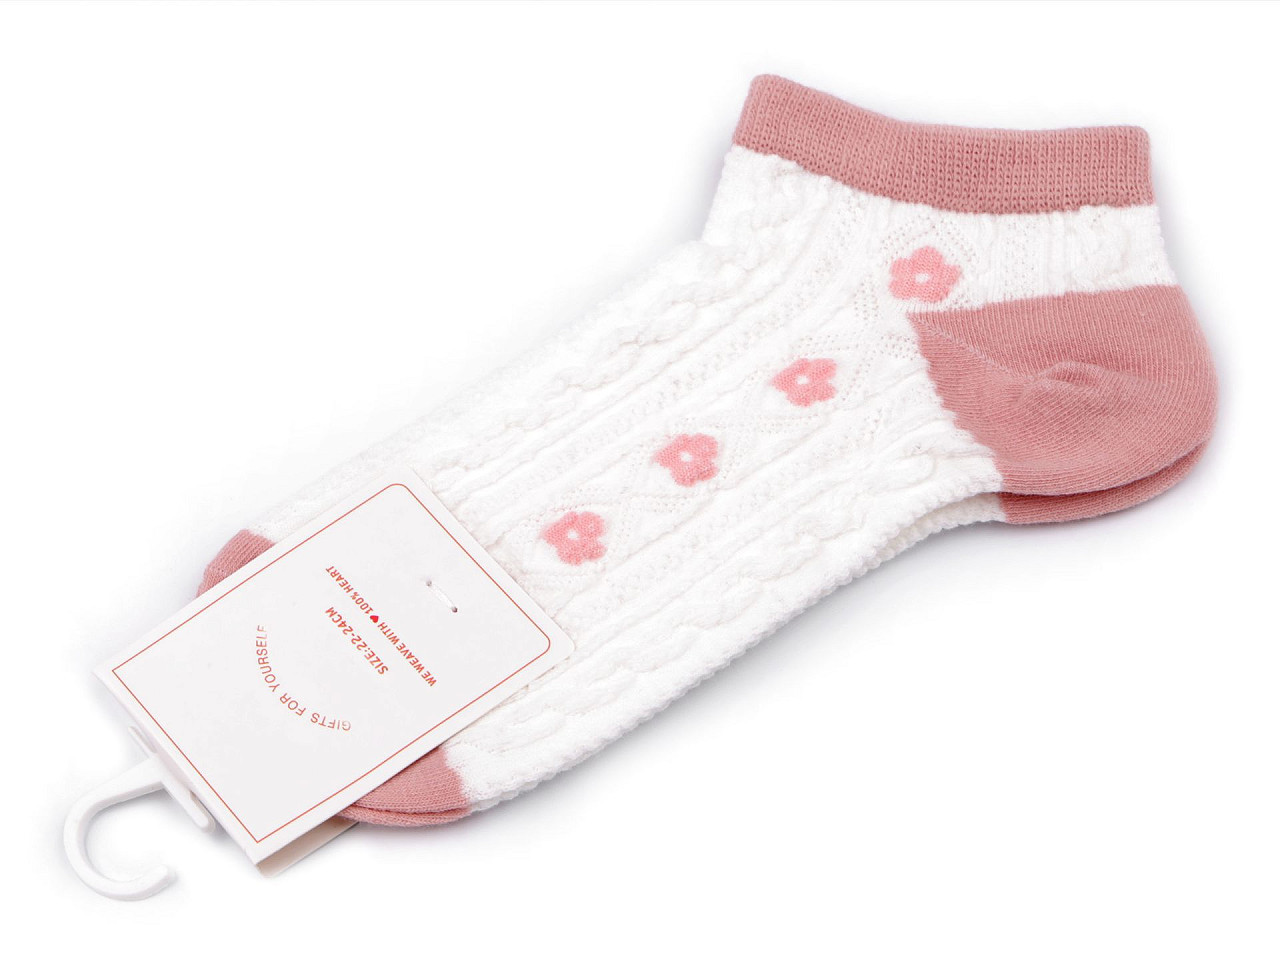 Dámské / dívčí bavlněné ponožky kotníkové, barva 3 pudrová květy